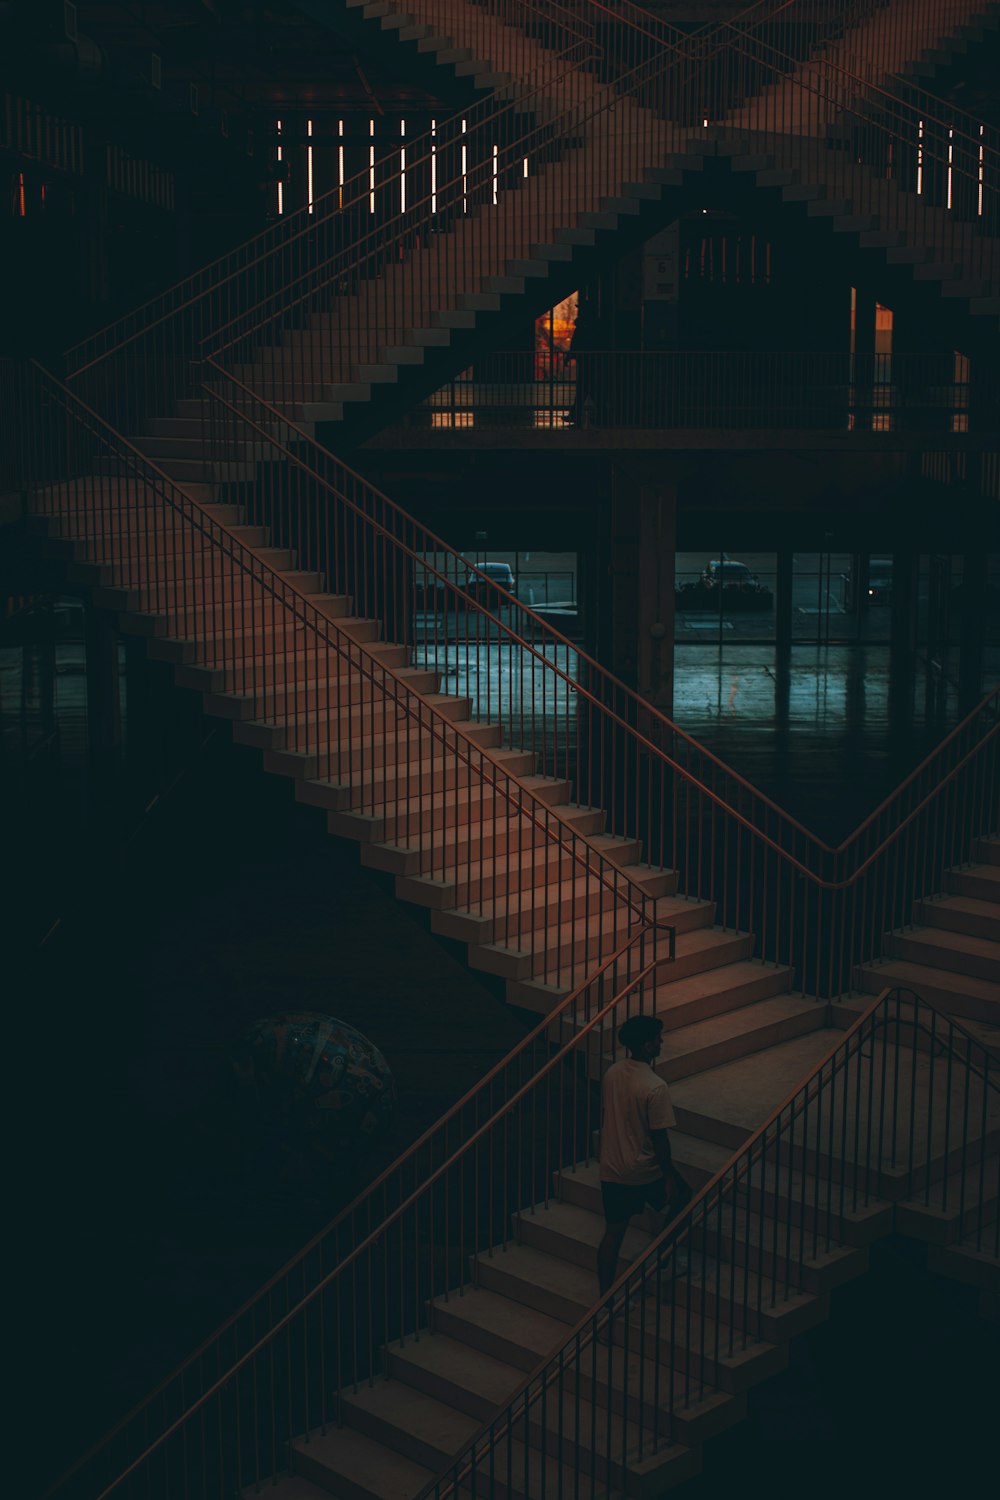 Un homme descendant un escalier la nuit